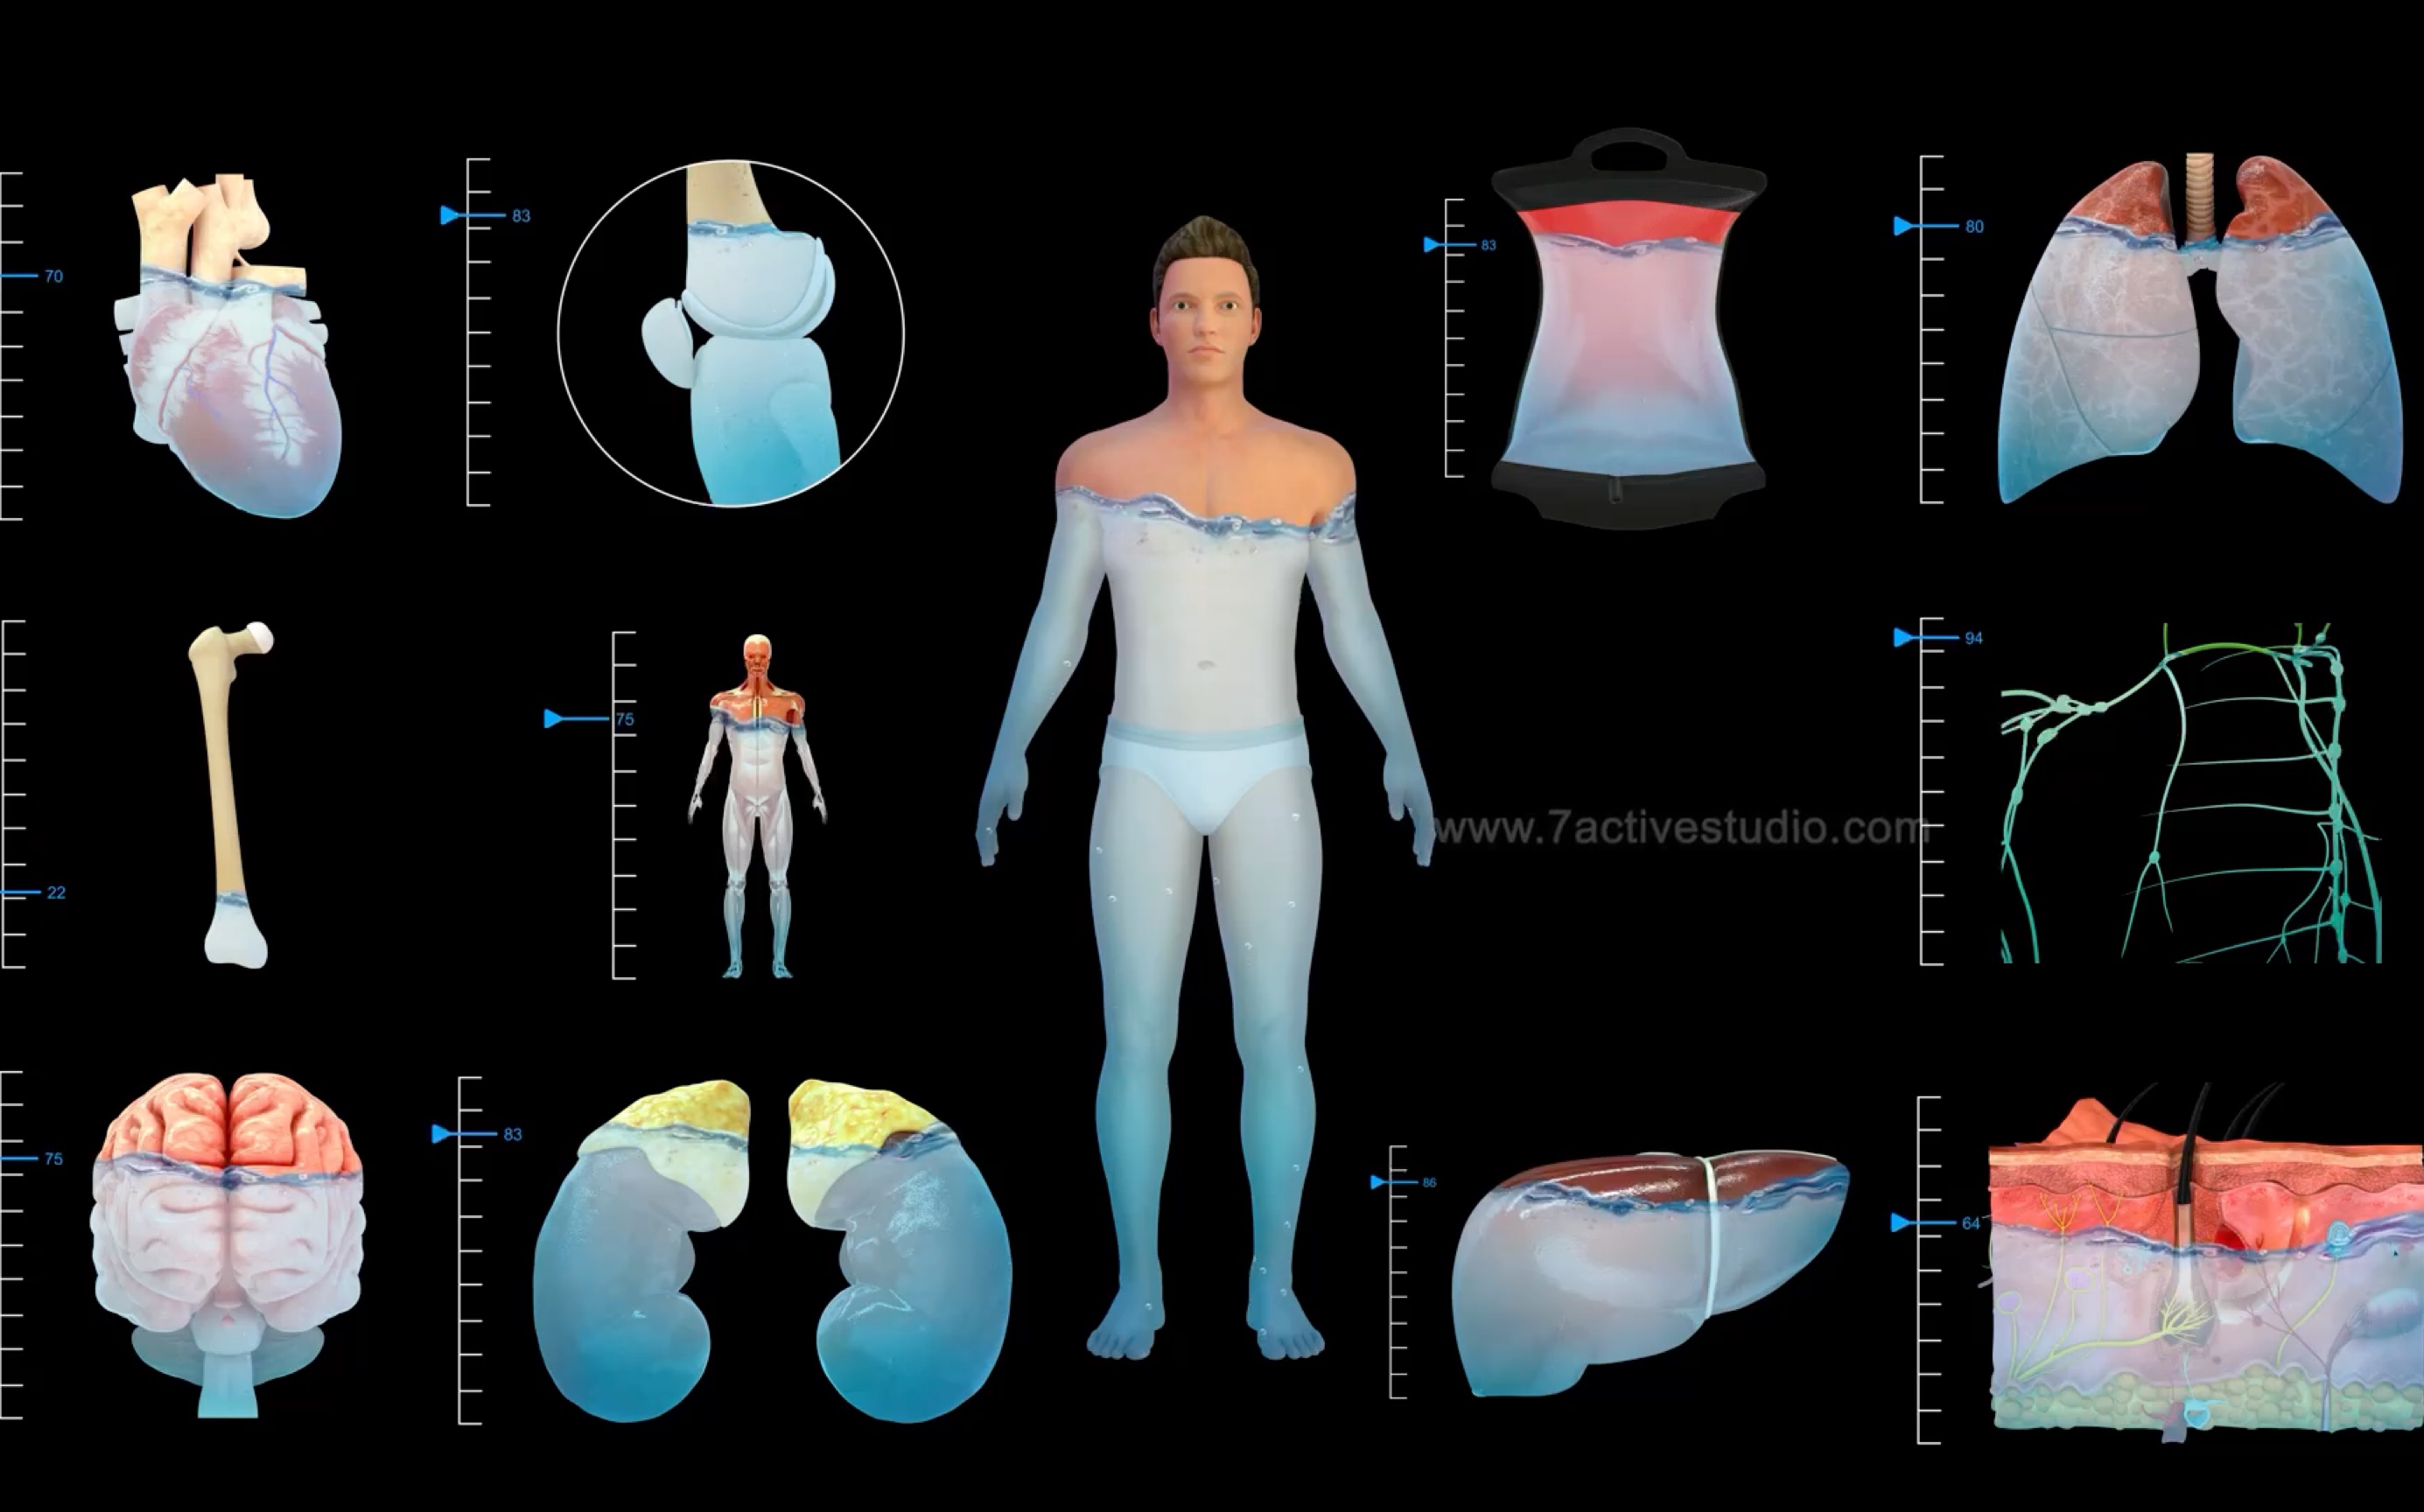 人体各器官的正常寿命图片